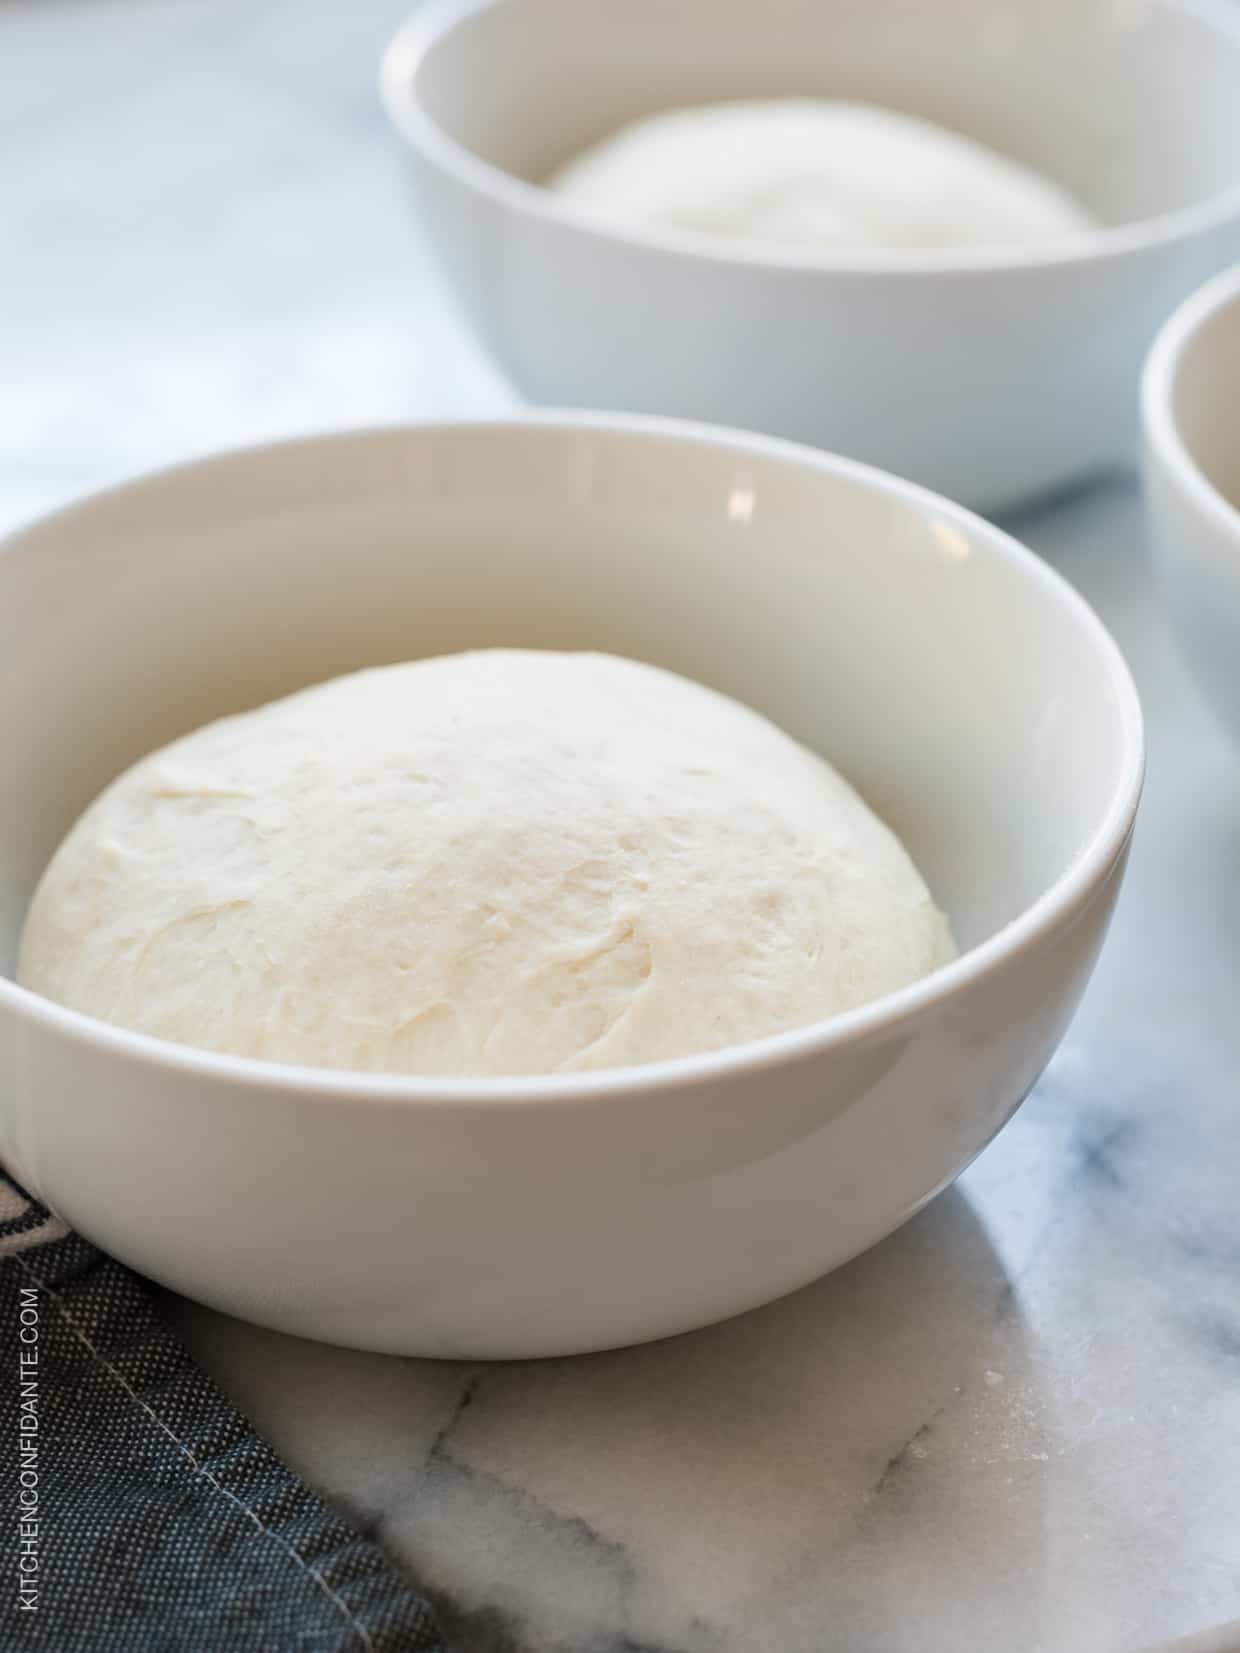 Olive oil flatbread dough in a white bowl.